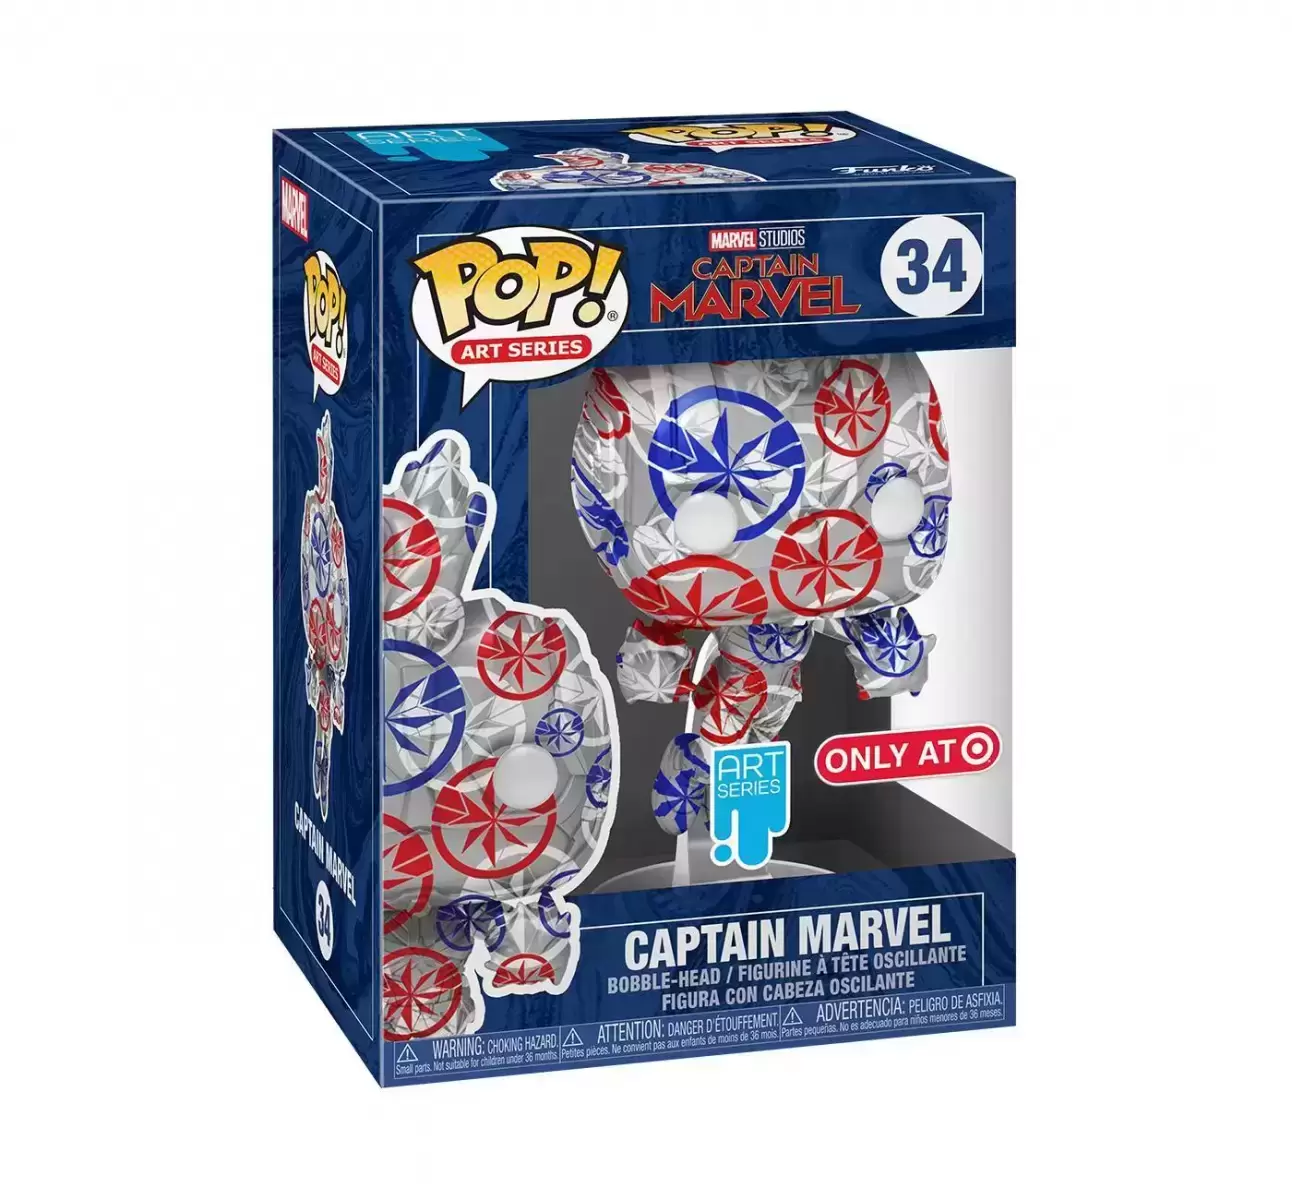 POP! Art Series - Captain Marvel - Captain Marvel